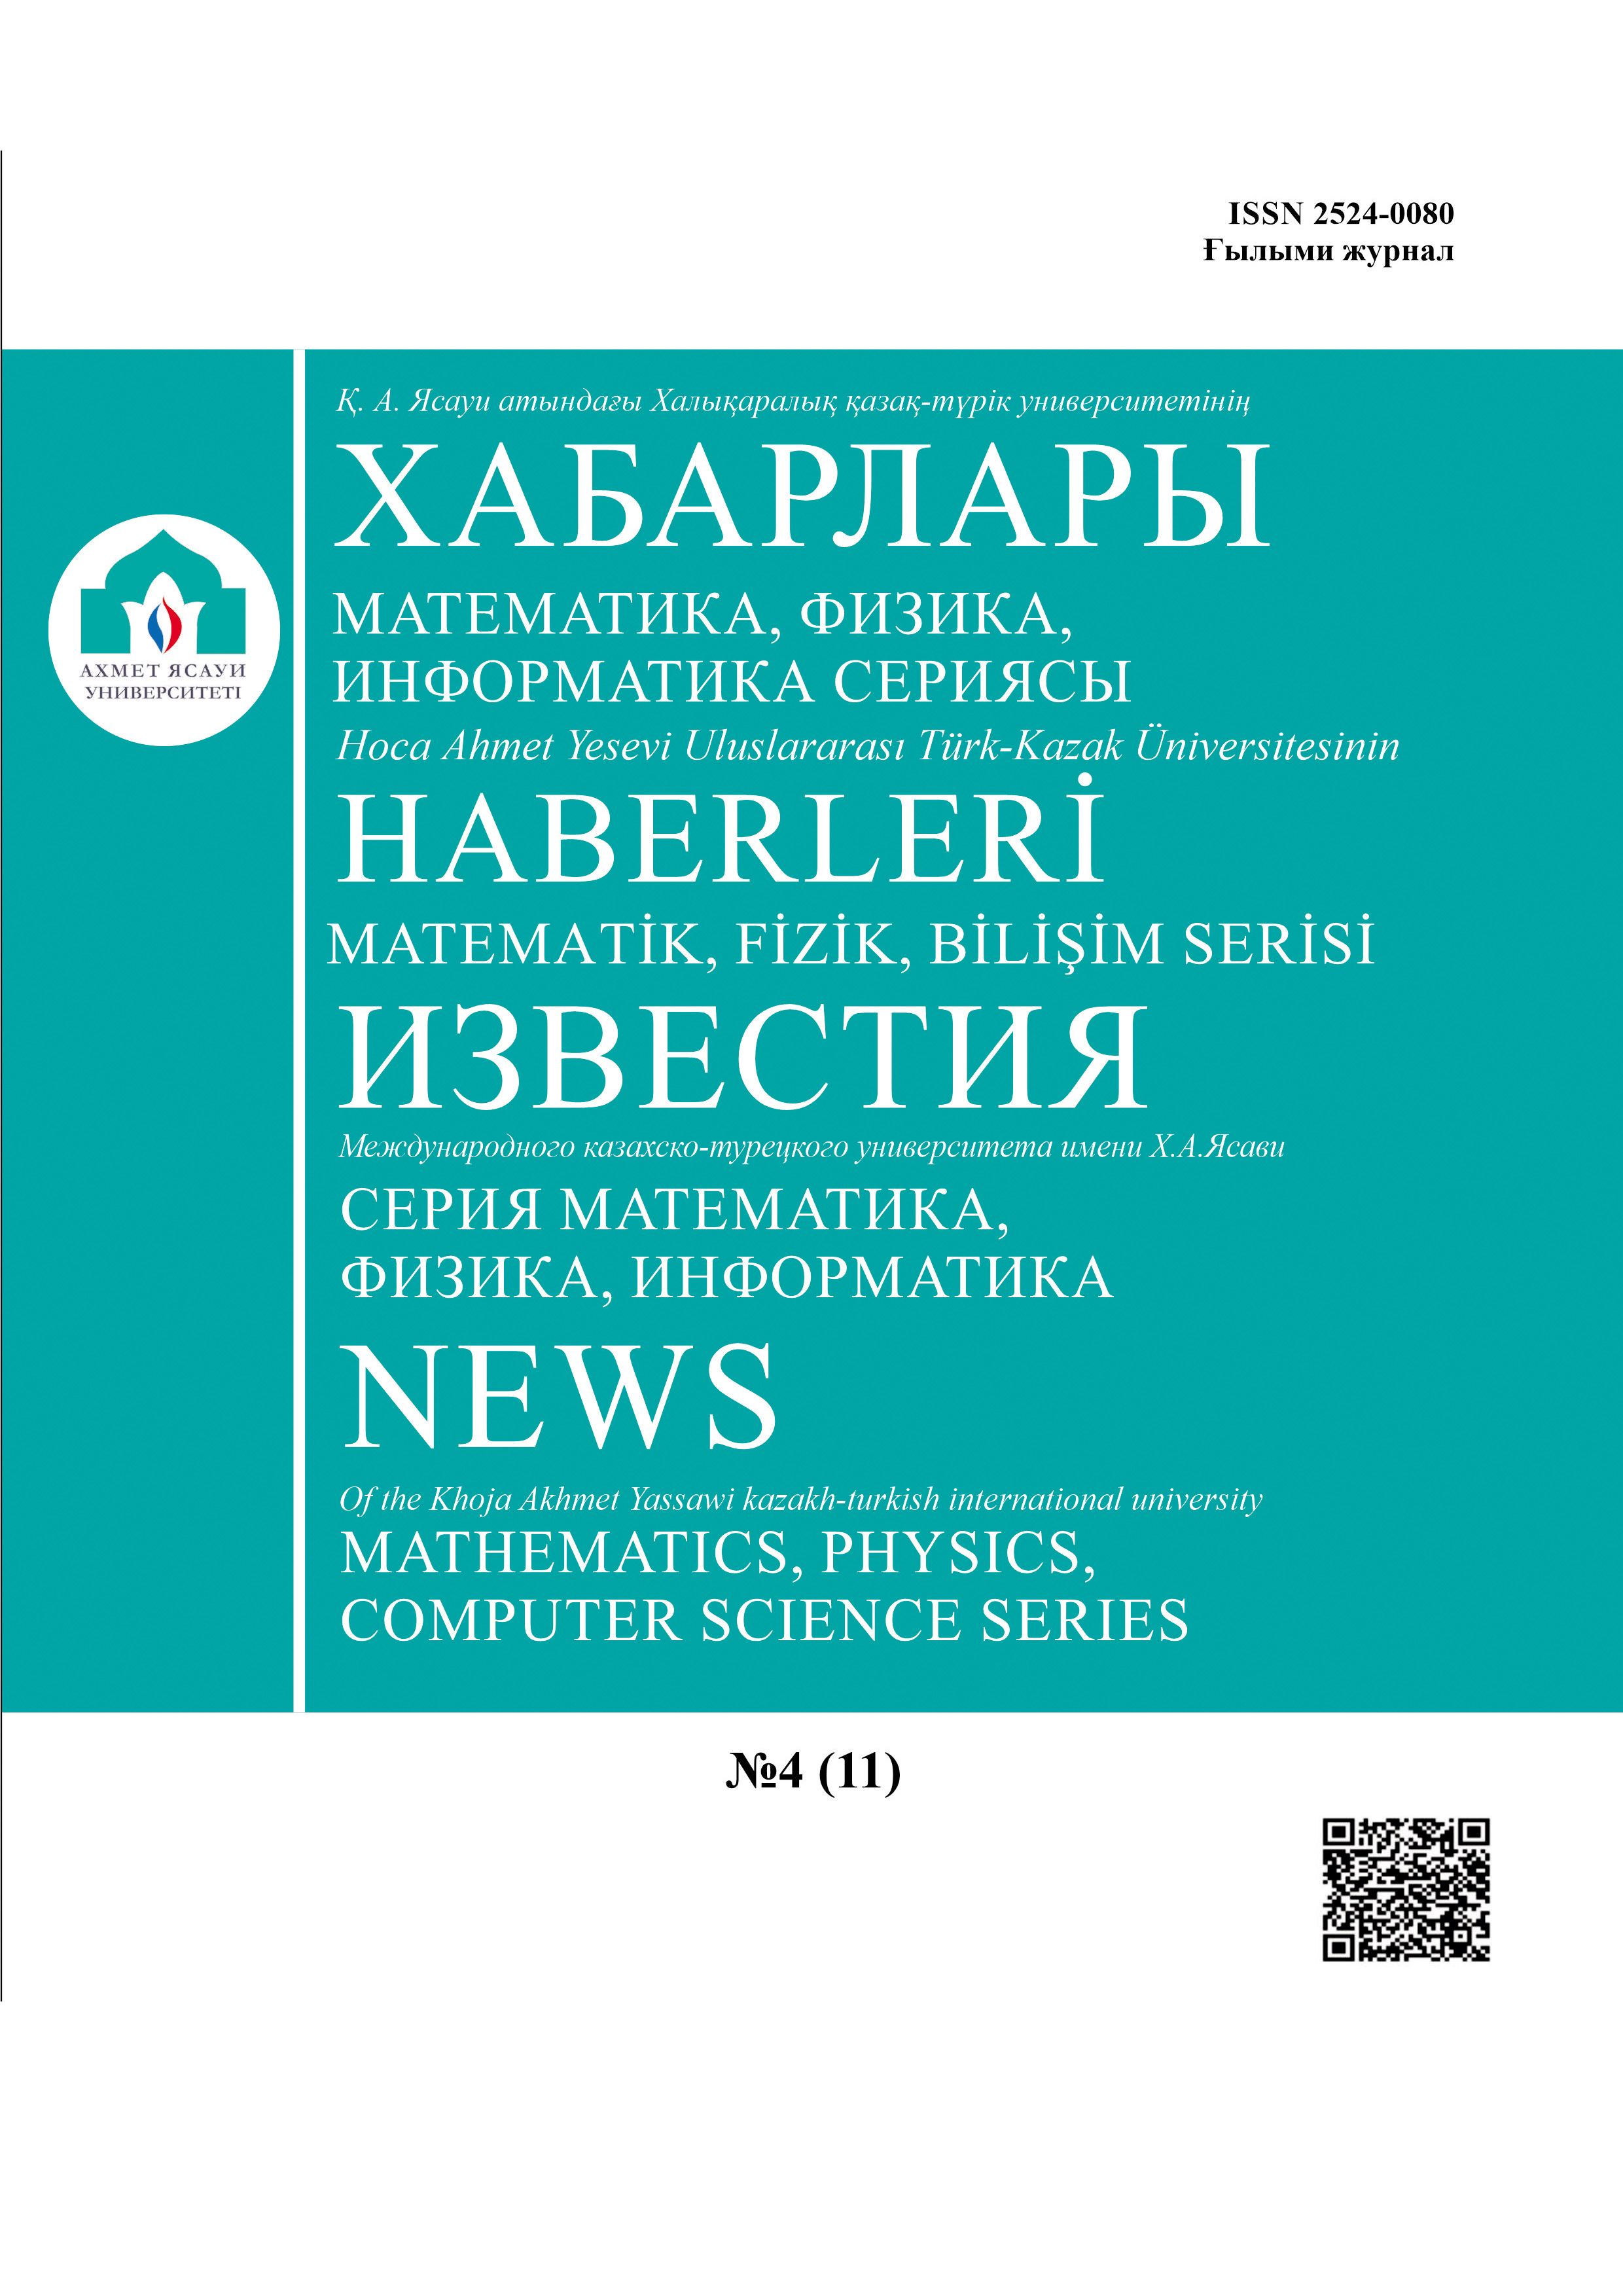 					View Vol. 3 No. 18 (2021): NEWS Of the Khoja Akhmet Yassawi kazakh-turkish international university (Mathematics, physics, computer science series)
				